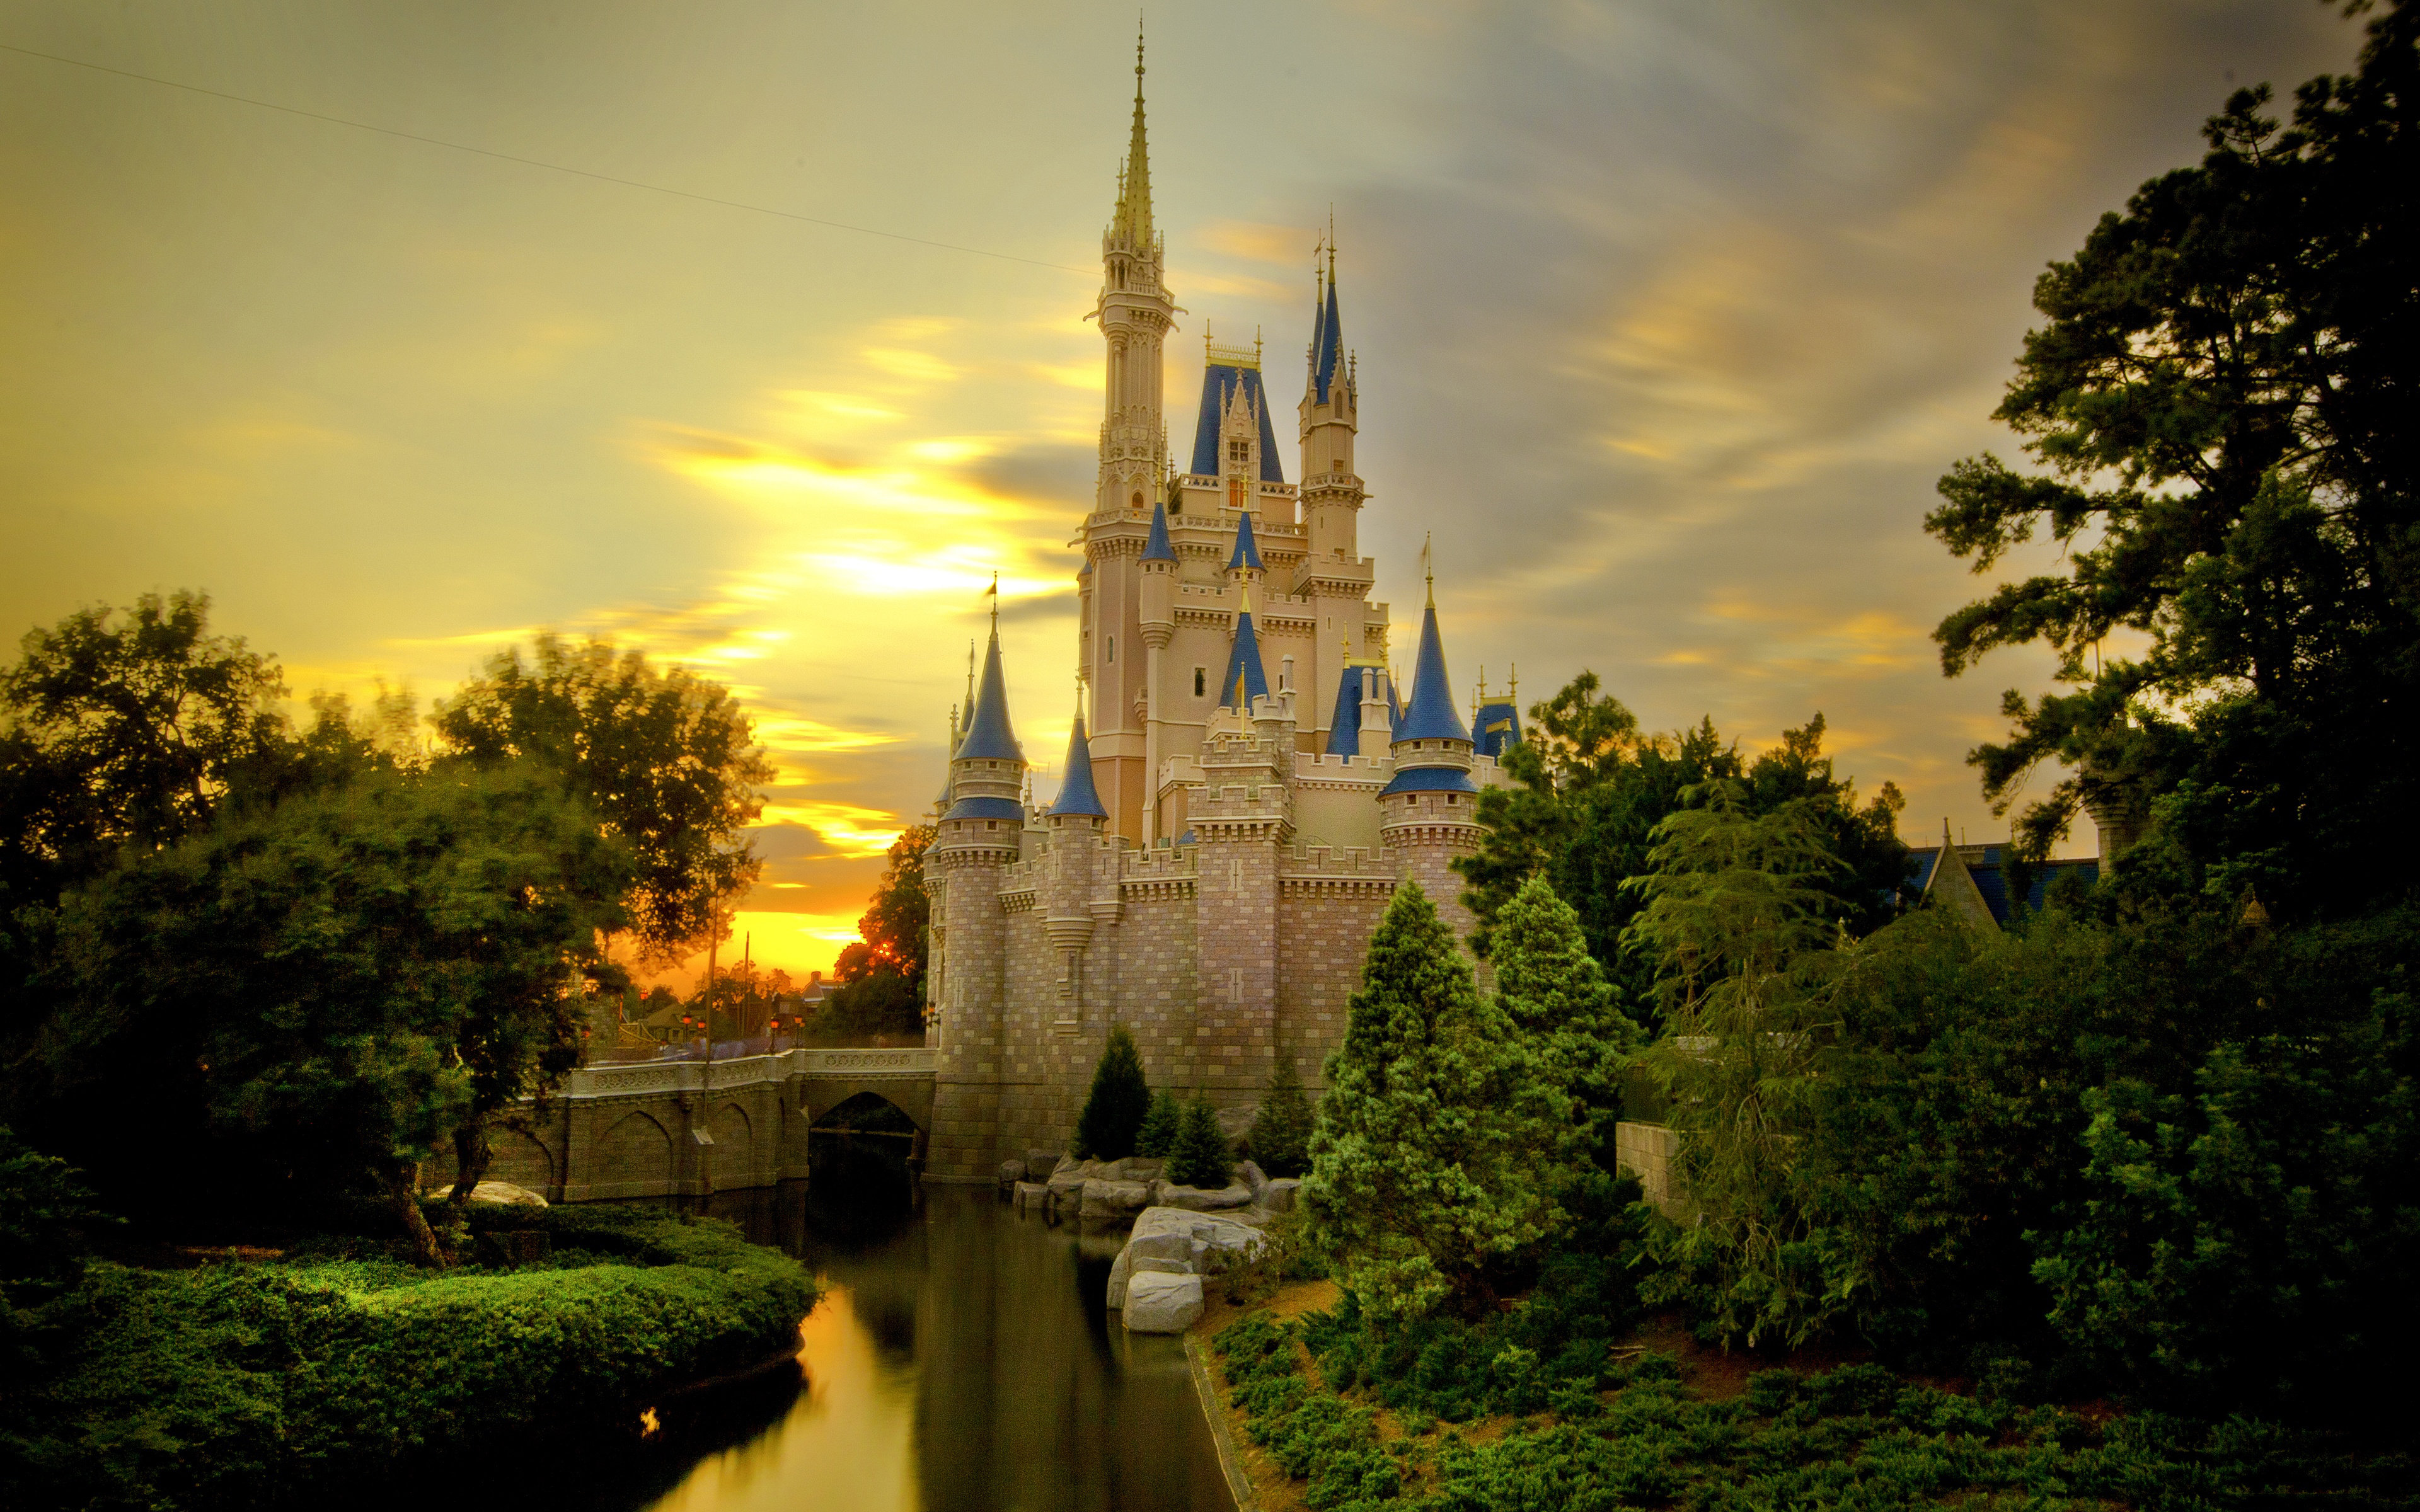 Sunset over Cinderella castle wallpaper background